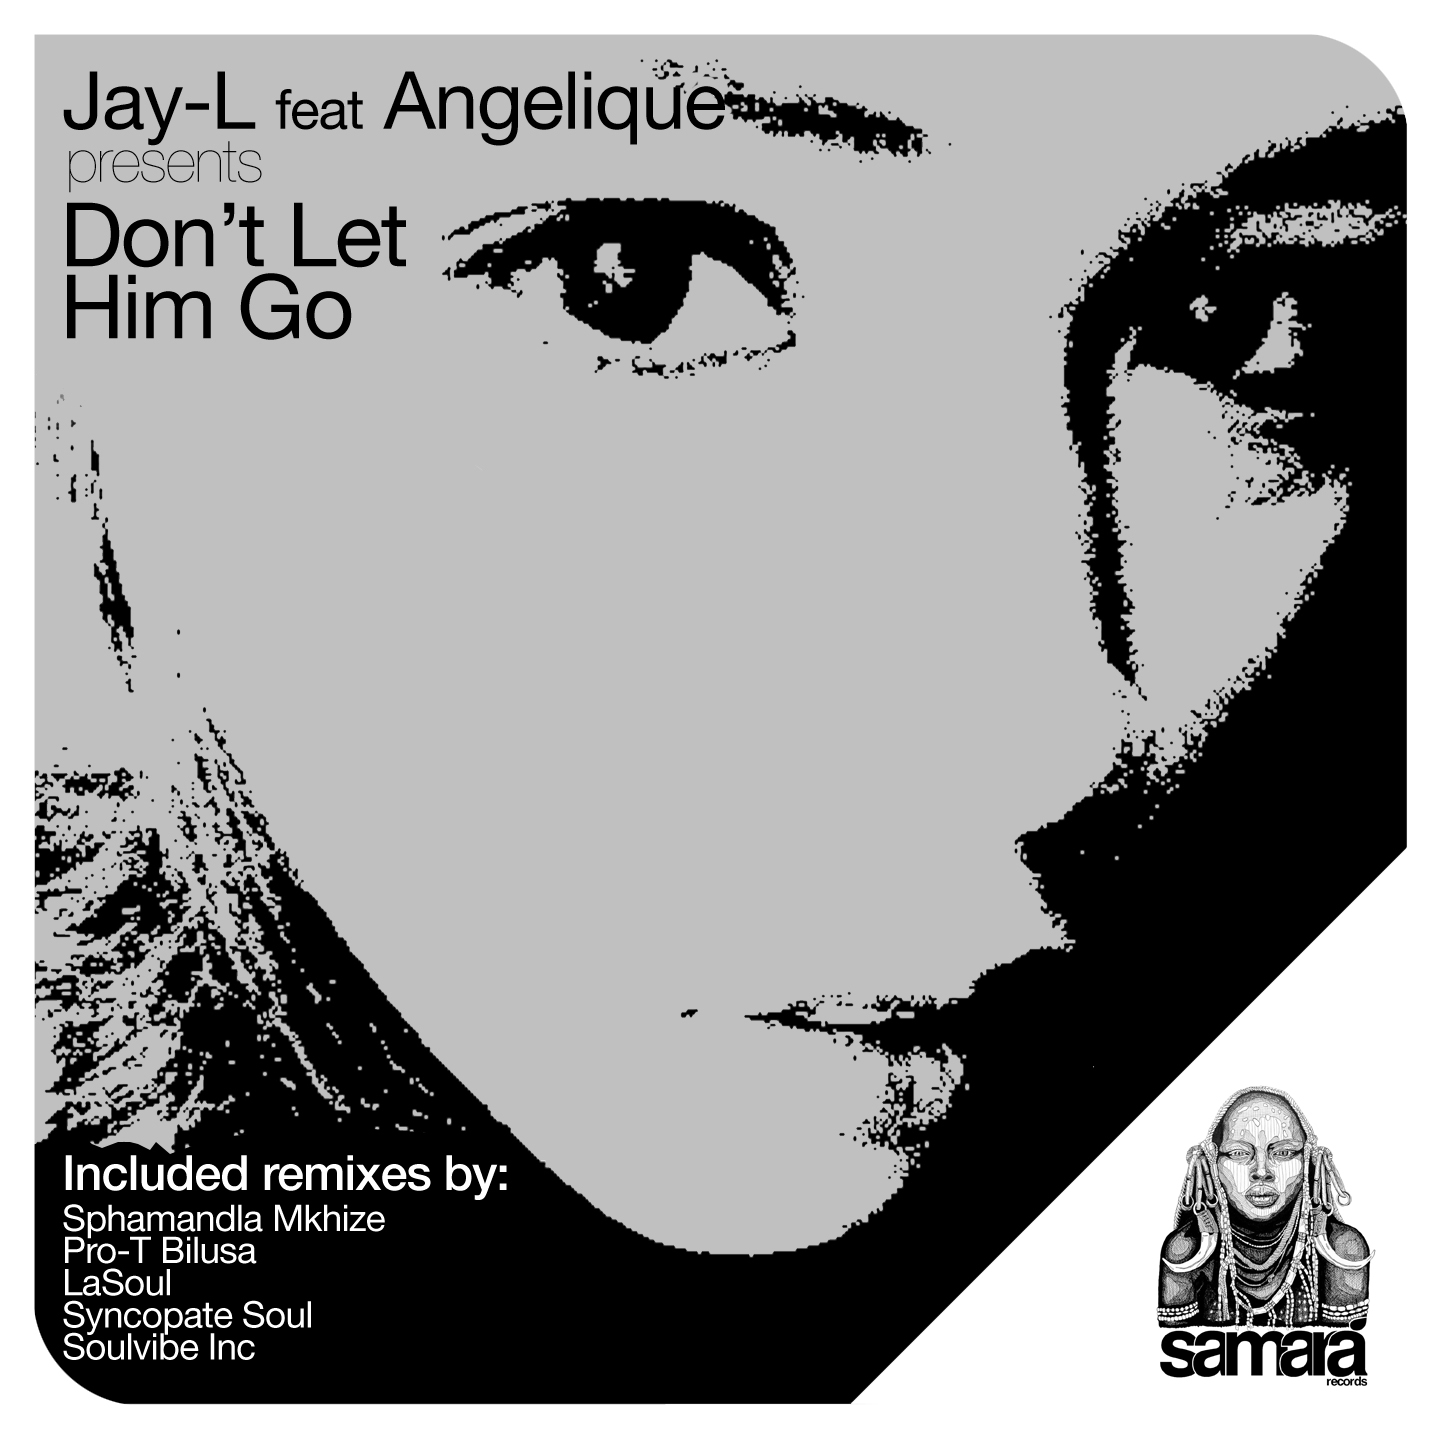 Don't Let Him Go (Pro-T Bilusa Remix)